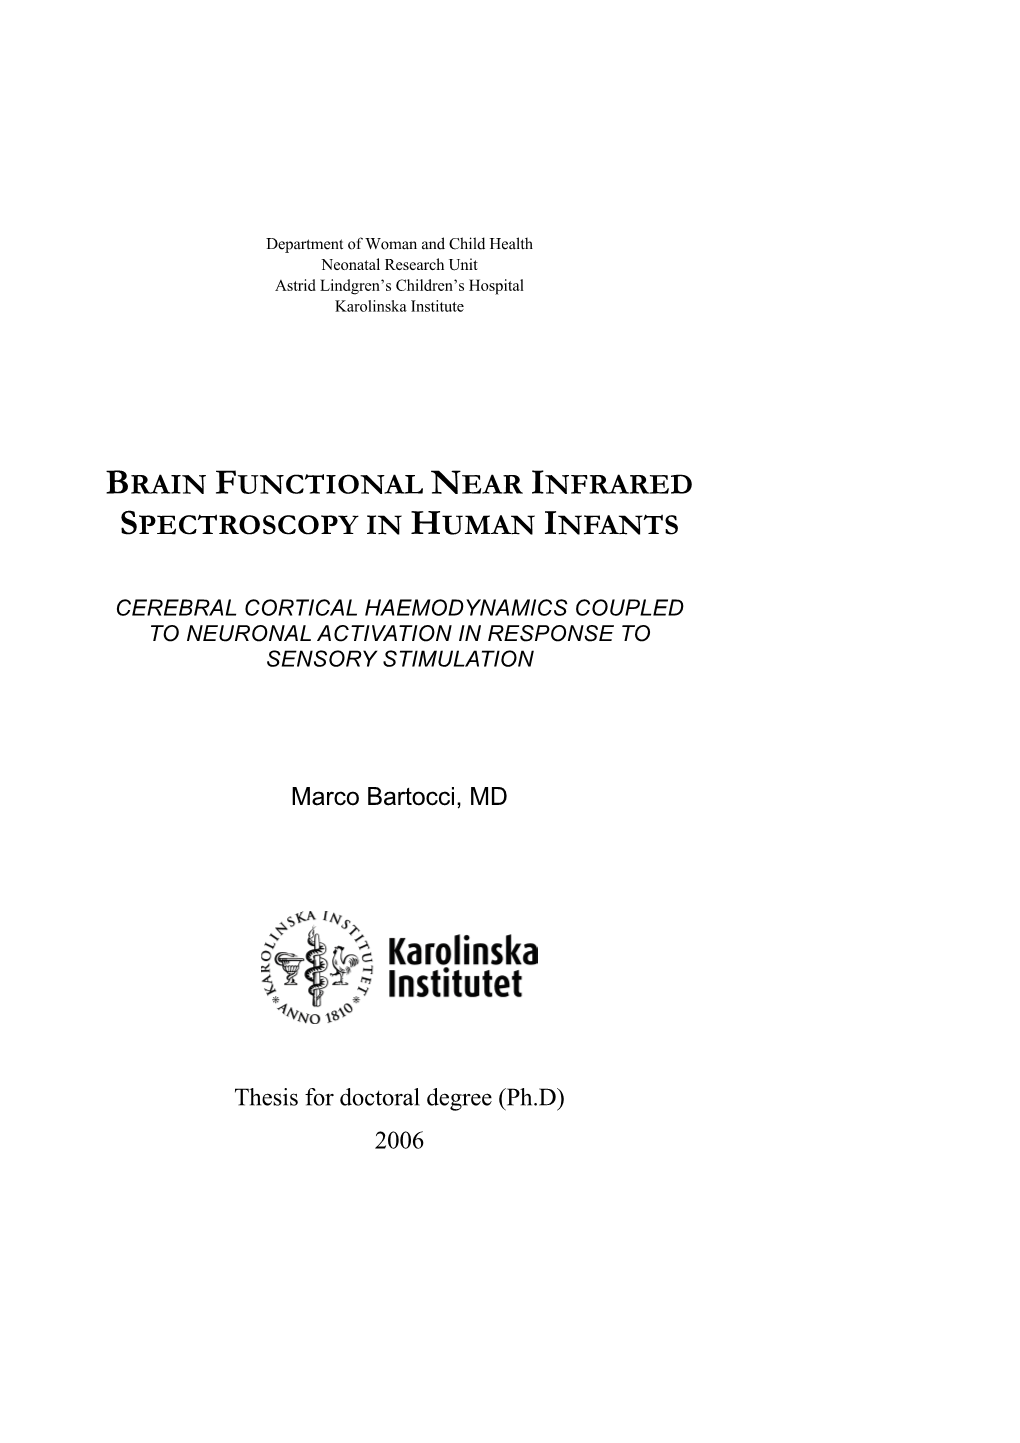 Brain Functional Near Infrared Spectroscopy in Human Infants